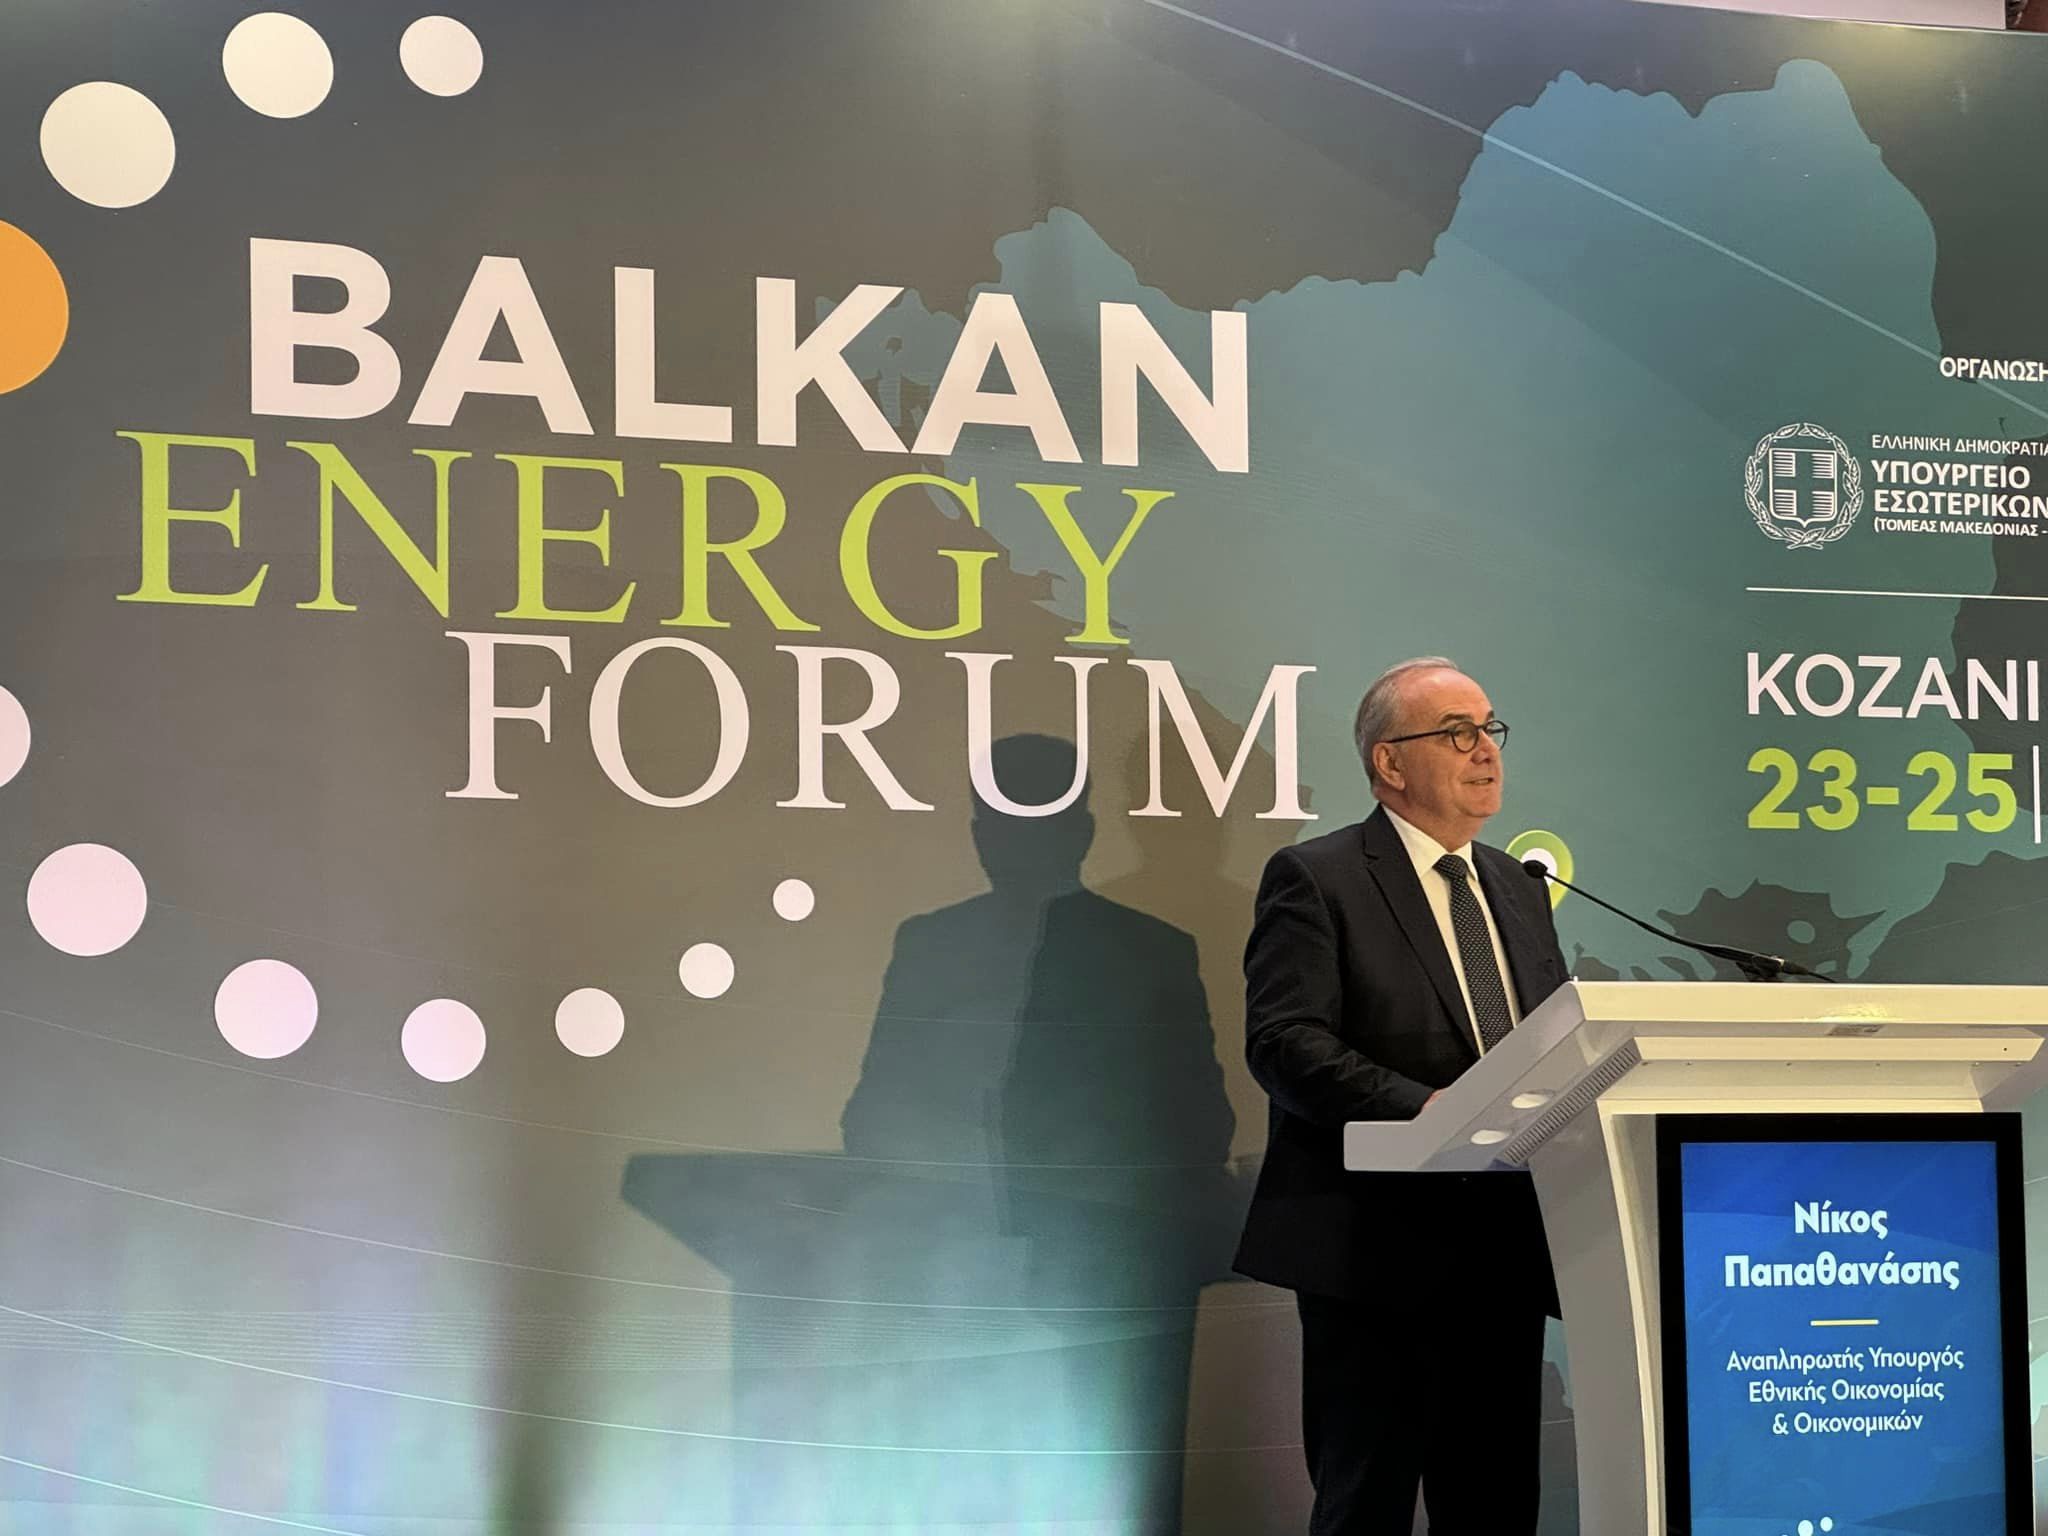 Μετασχηματίζουμε τις λιγνιτικές περιοχές με ευρωπαϊκούς πόρους 1,6 δις. ευρώ. Στην Κοζάνη για το Balkan Energy Forum